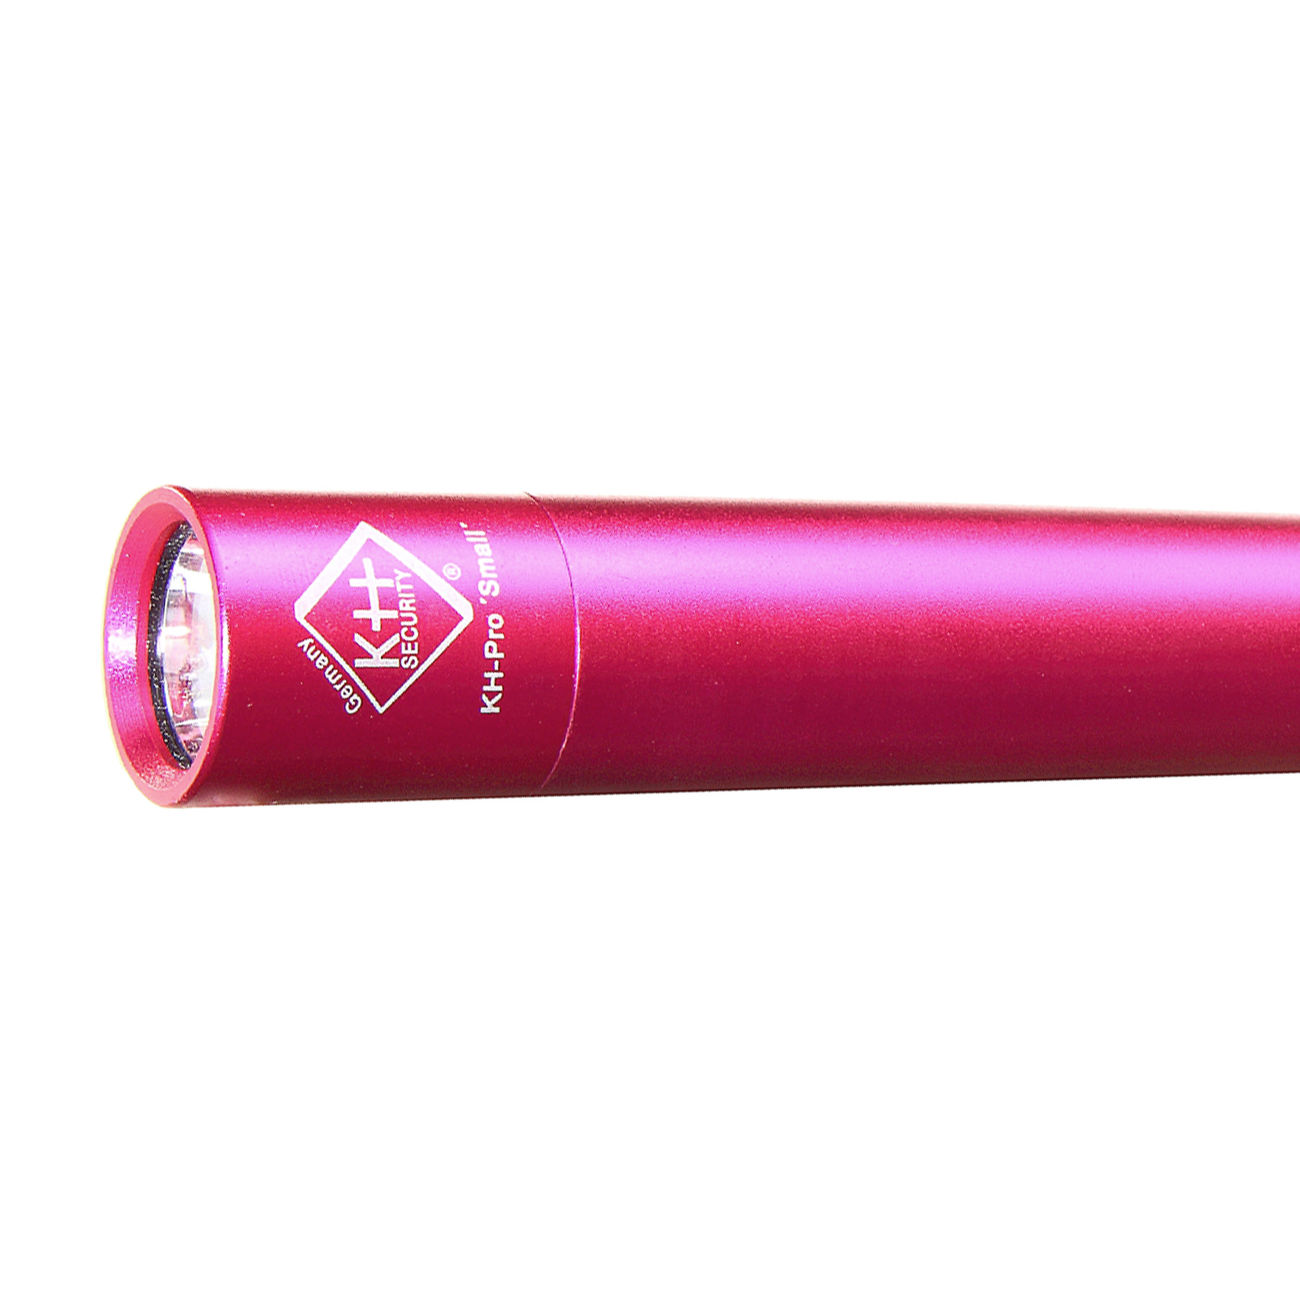 KH Security Defense LED Stablampe KH-Pro Small pink Bild 1